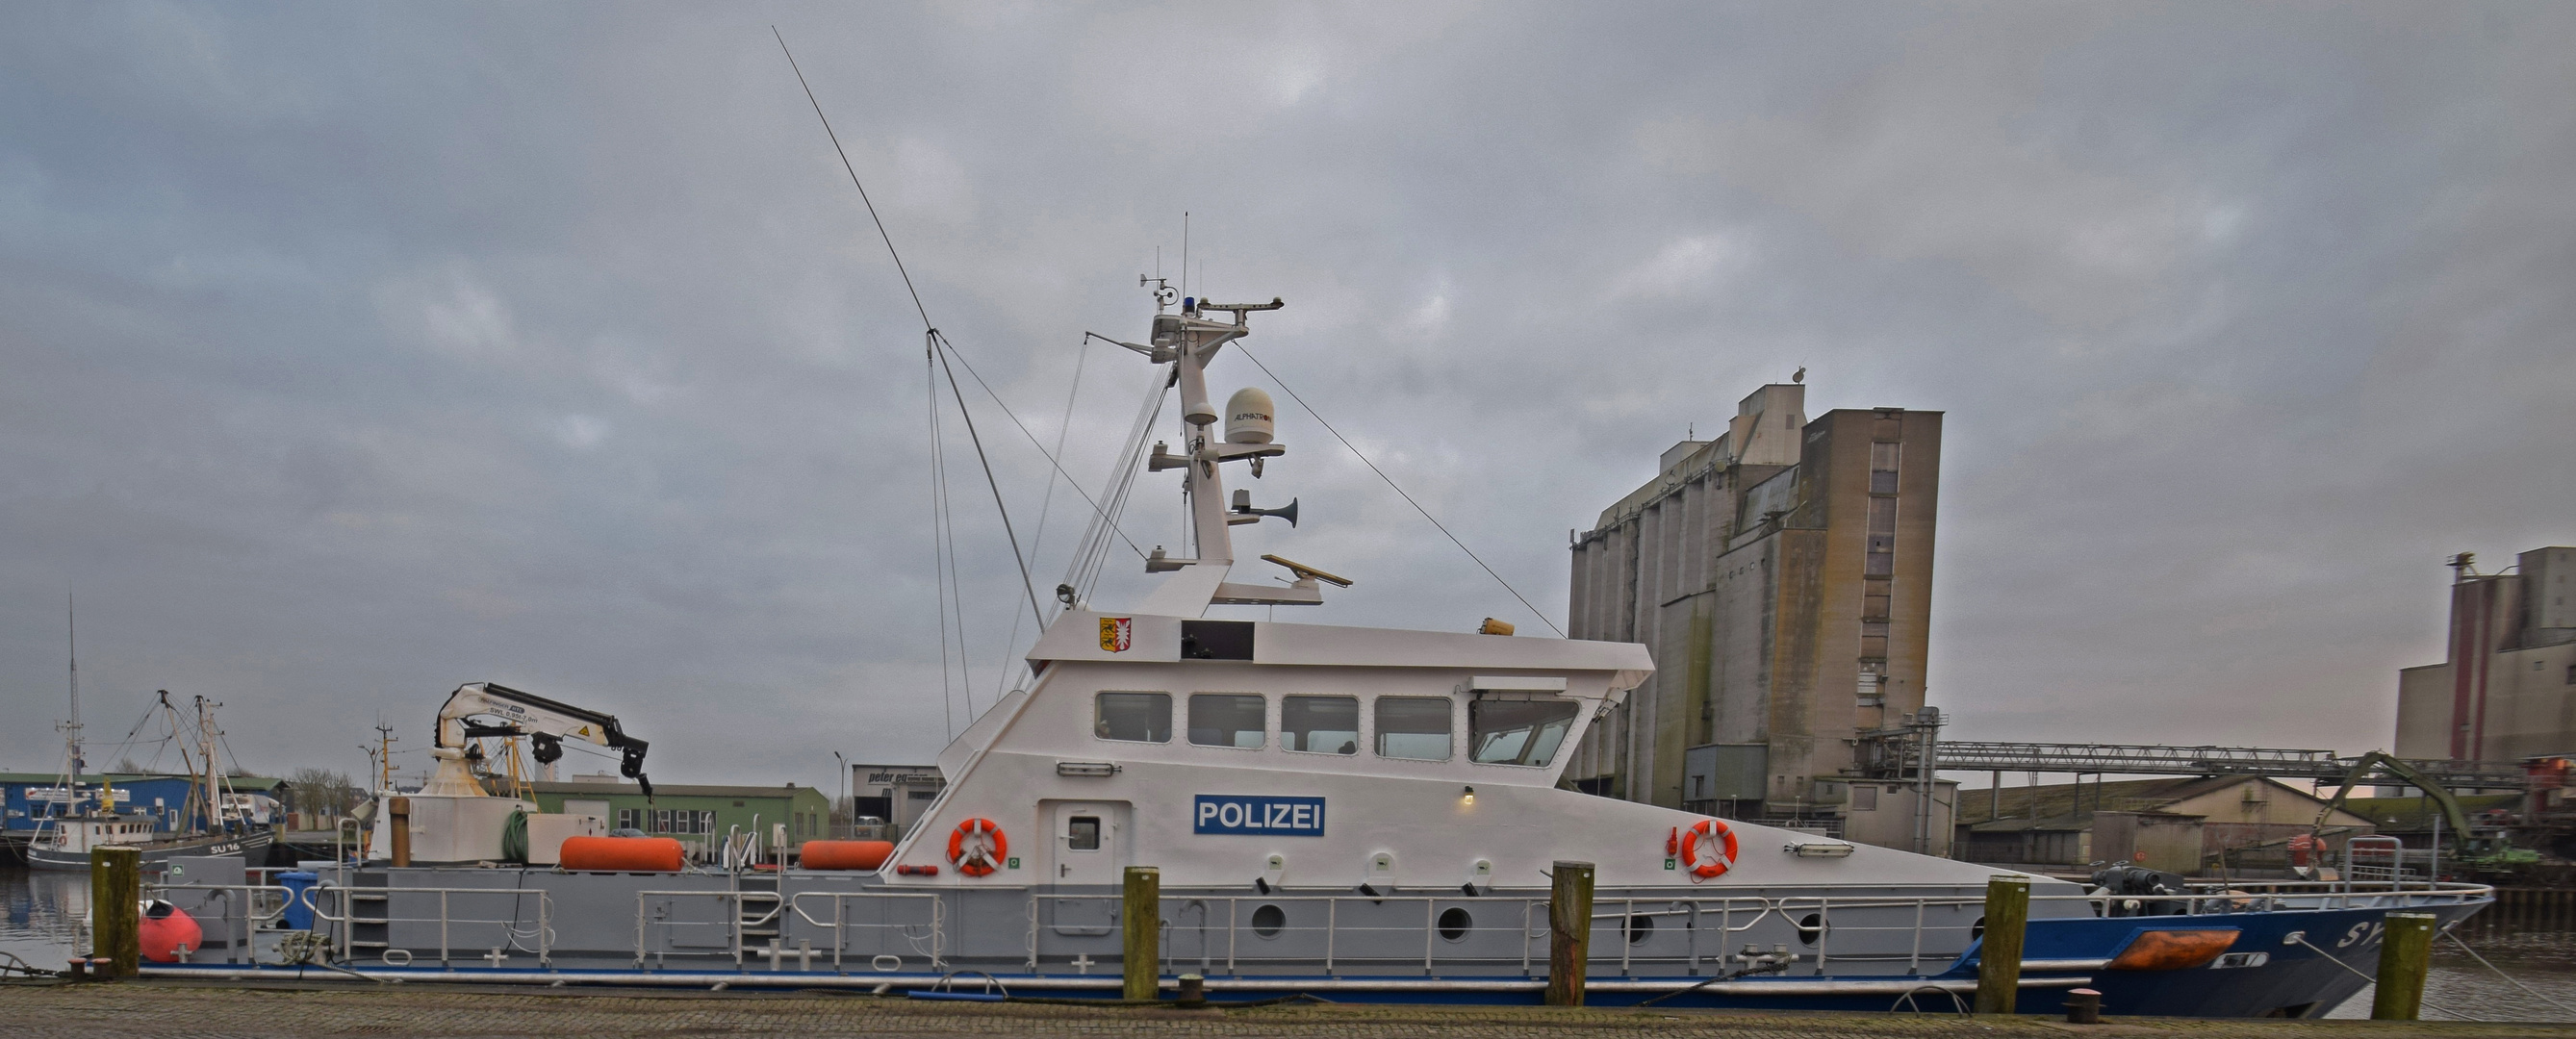 Polizeiboot im Husumer Hafen